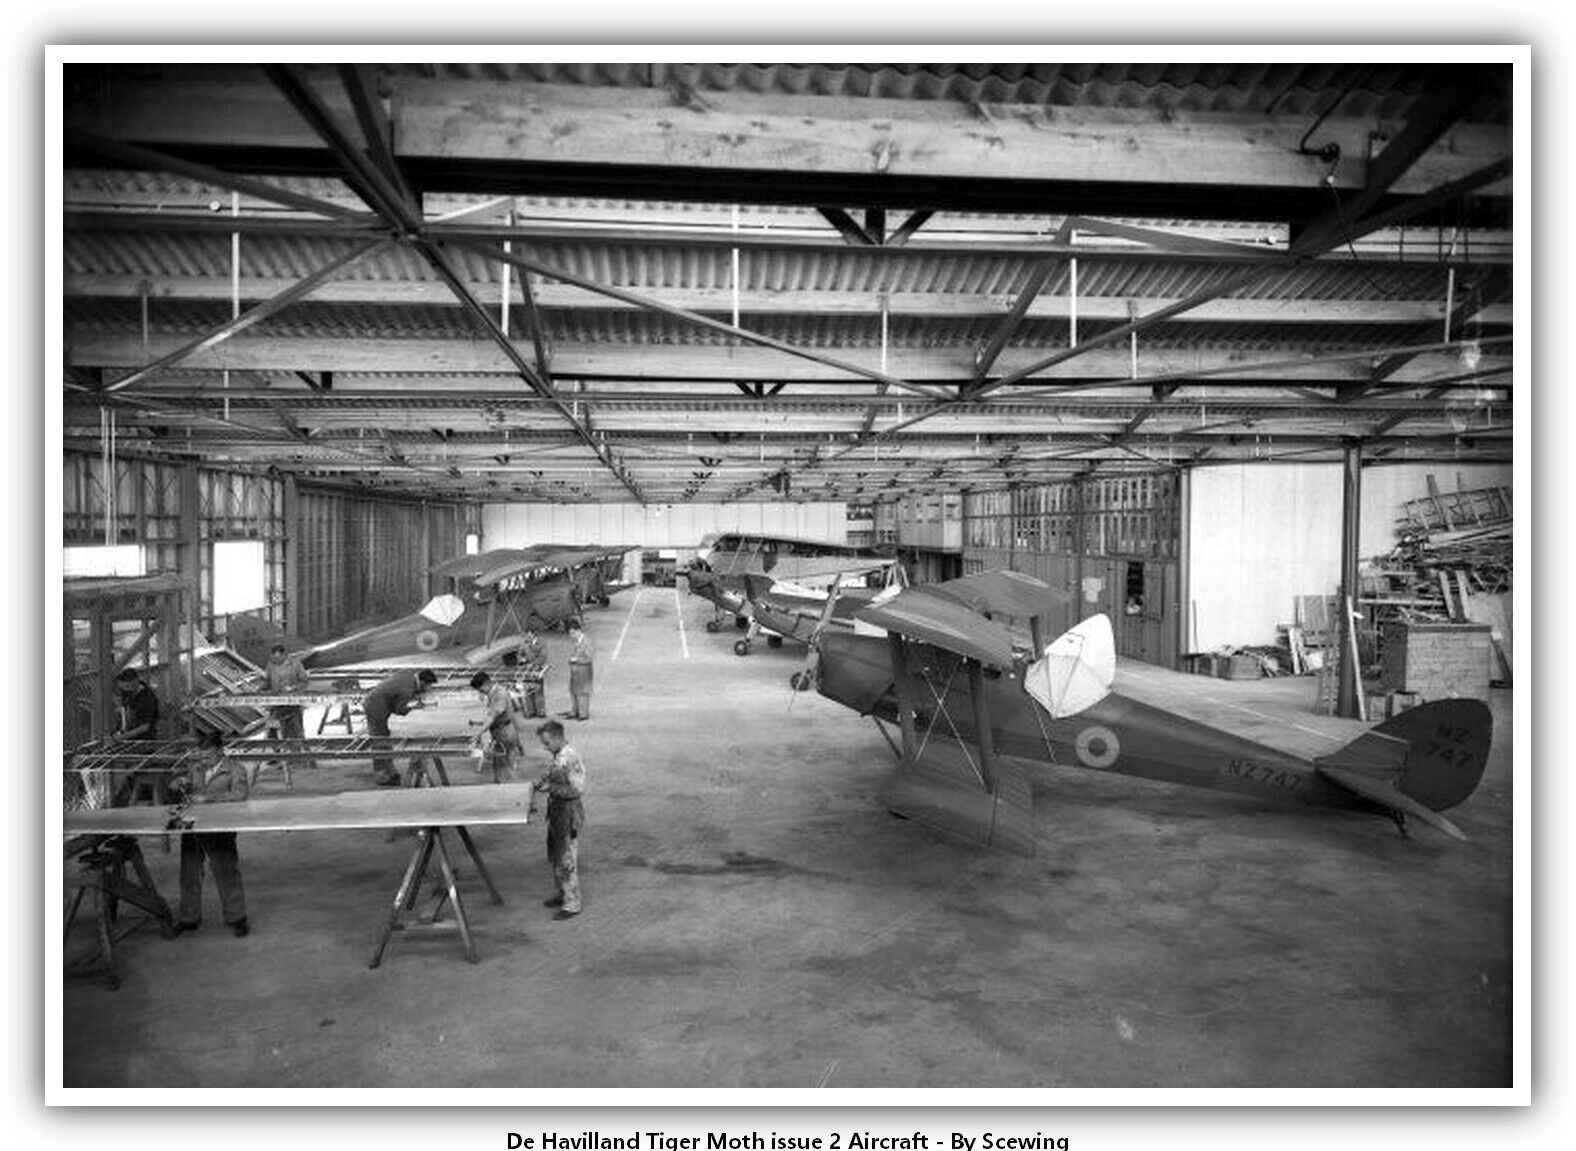 De Havilland Tiger Moth issue 2 Aircraft